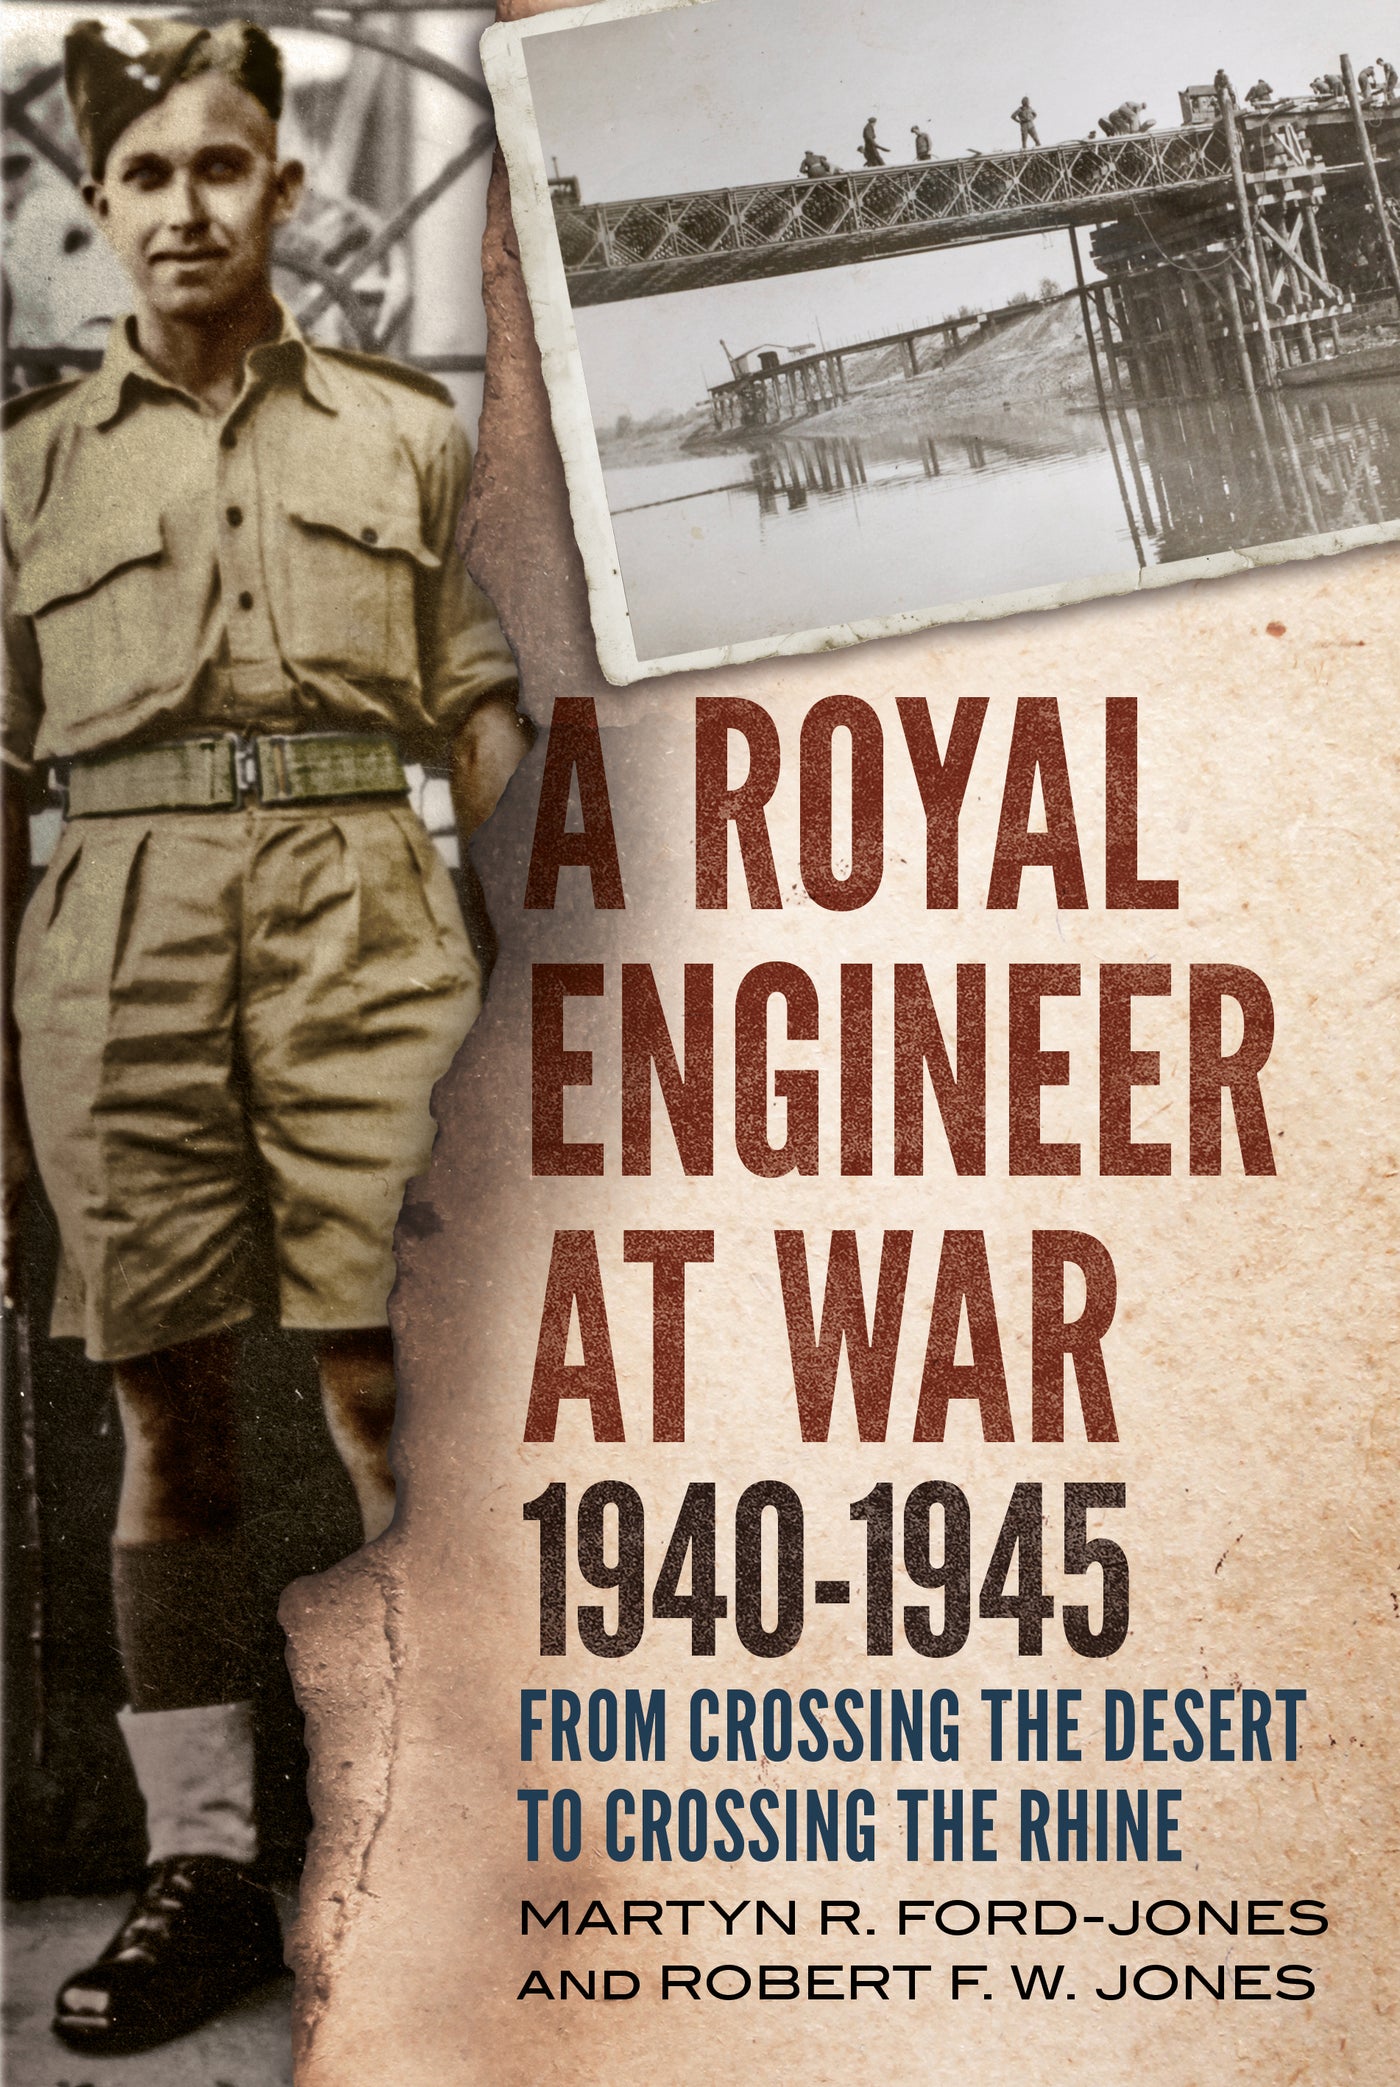 A Royal Engineer at War 1940-1945